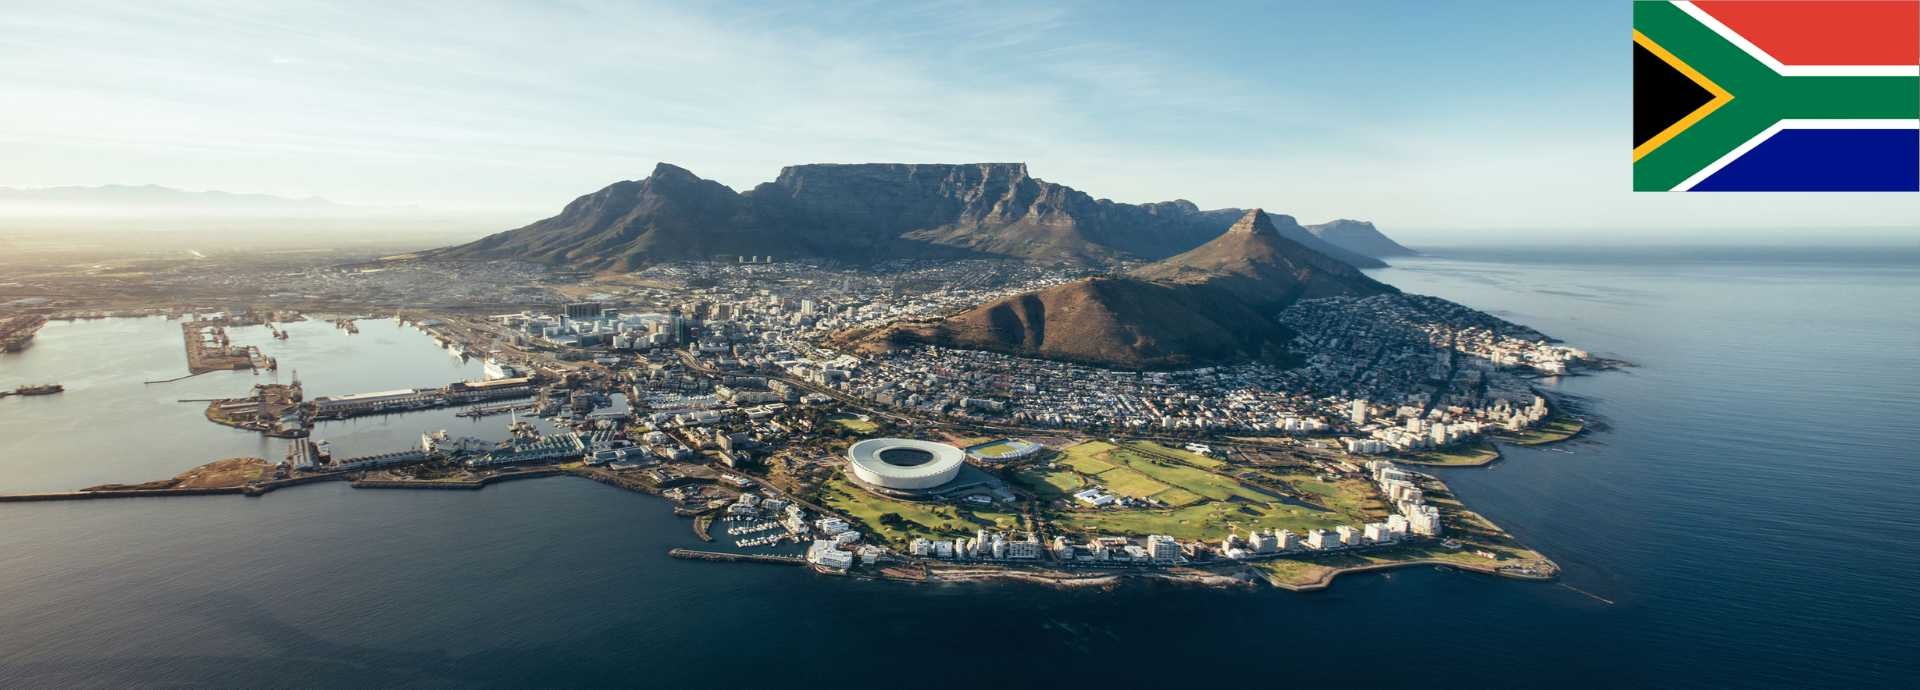 South Africa Slide Image